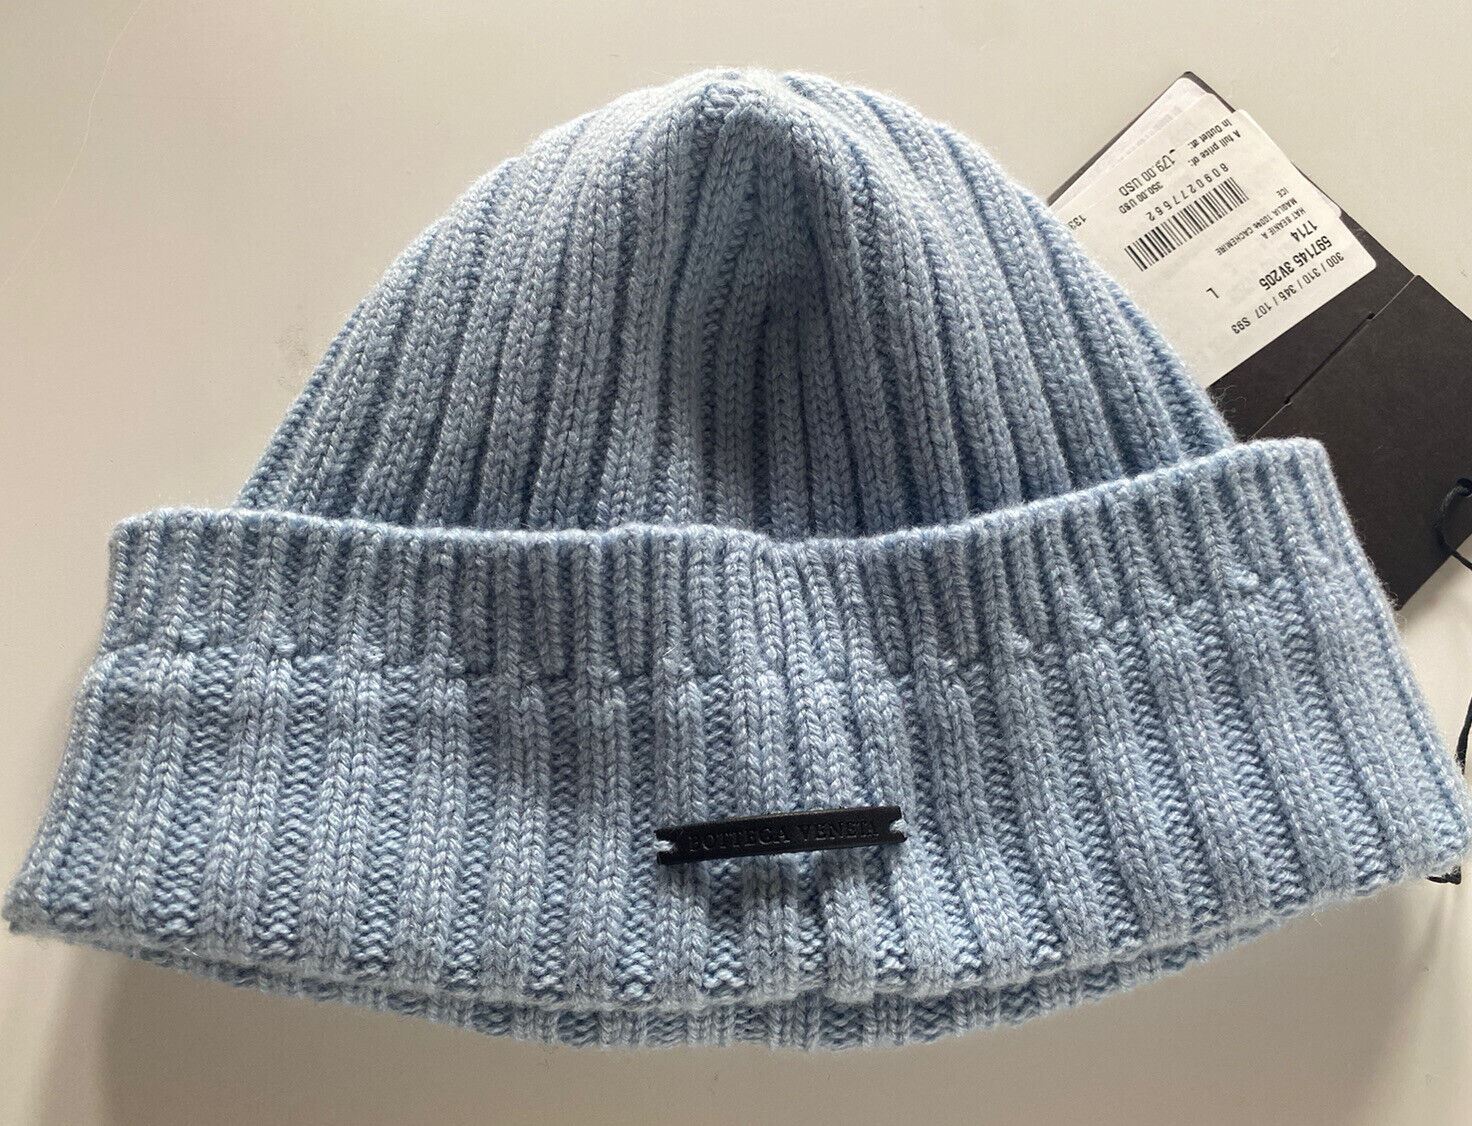 NWT $350 Bottega Veneta 100% Cashmere Knit Beanie Hat Blue Large 597145 Italy